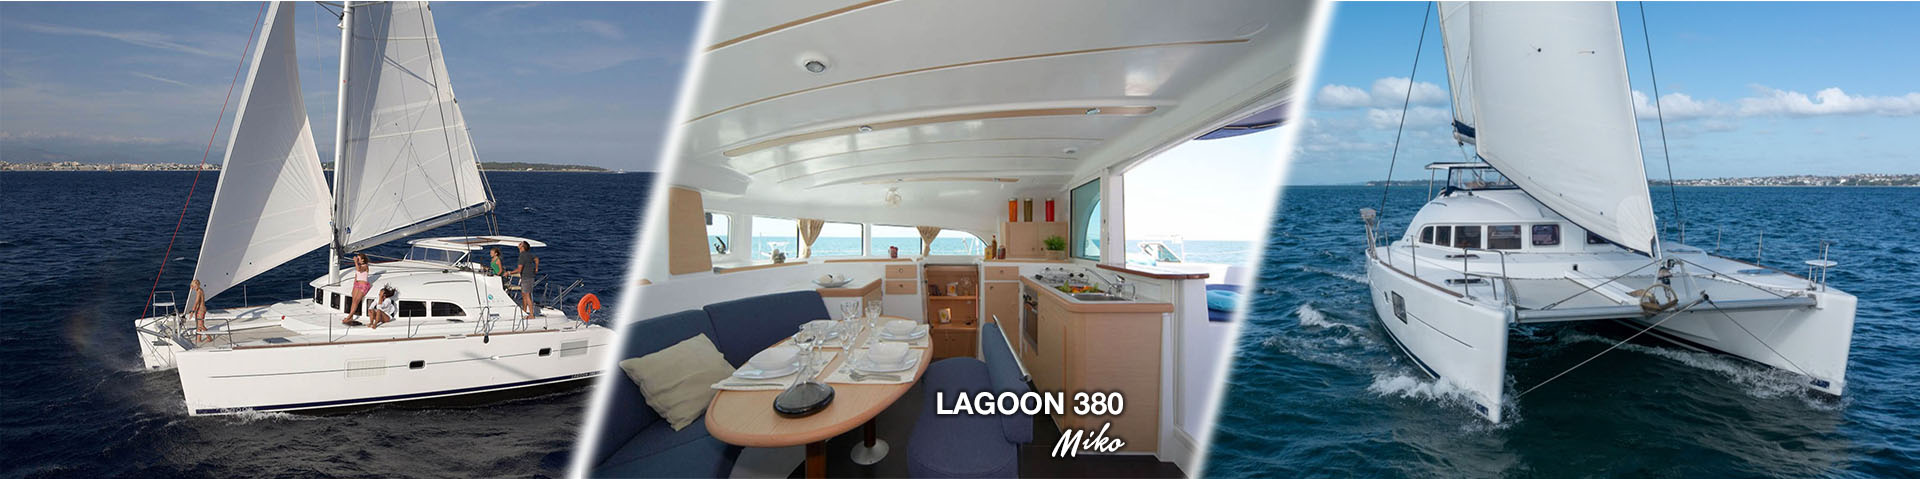 Miko Lagoon 380 Yacht Charter